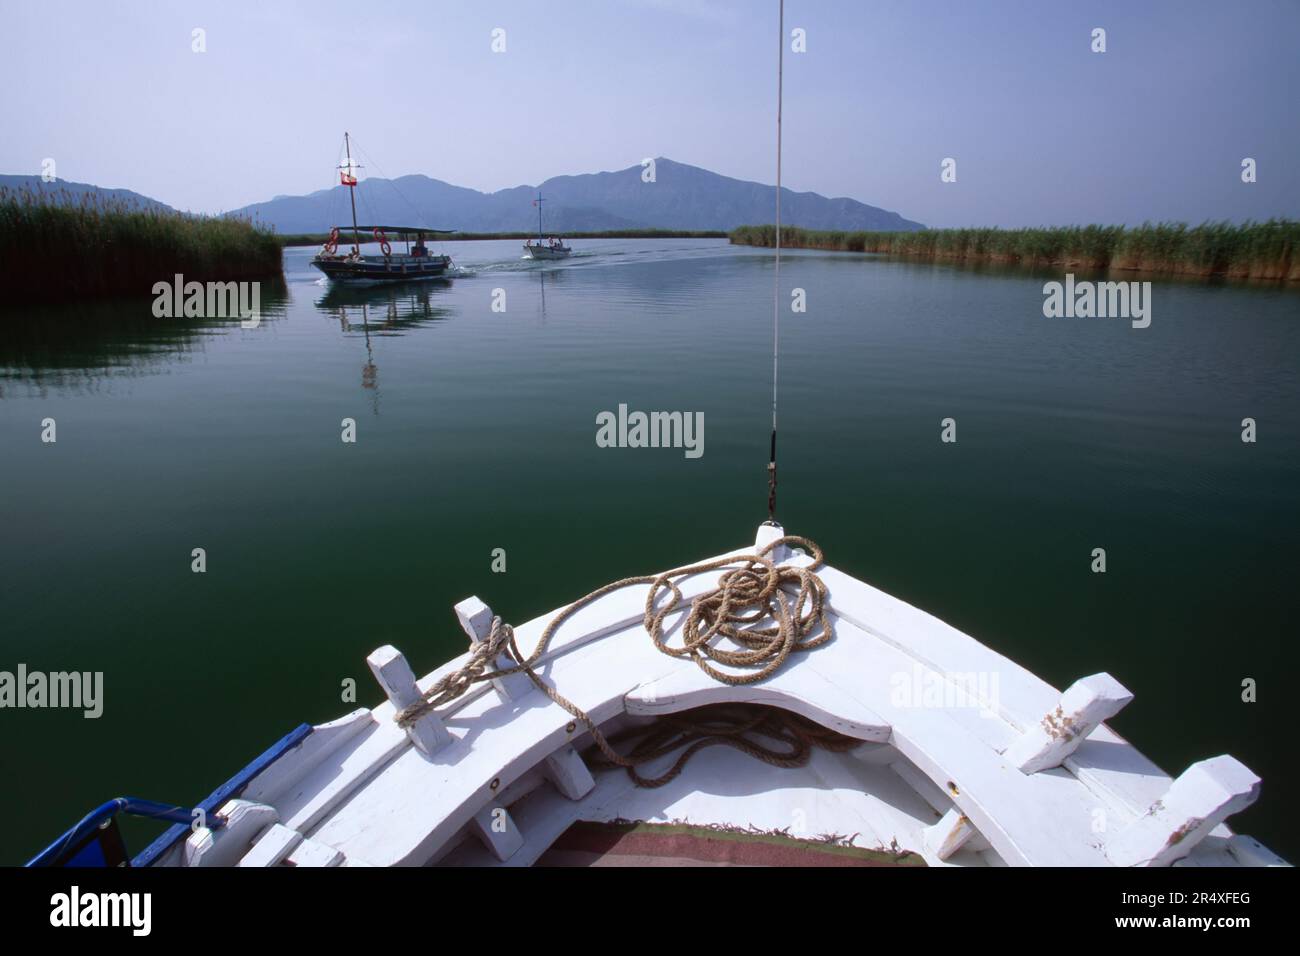 Vue sur une mer plate, des bateaux et des collines au-dessus de la proue d'un voilier blanc ; République de Turkiye Banque D'Images